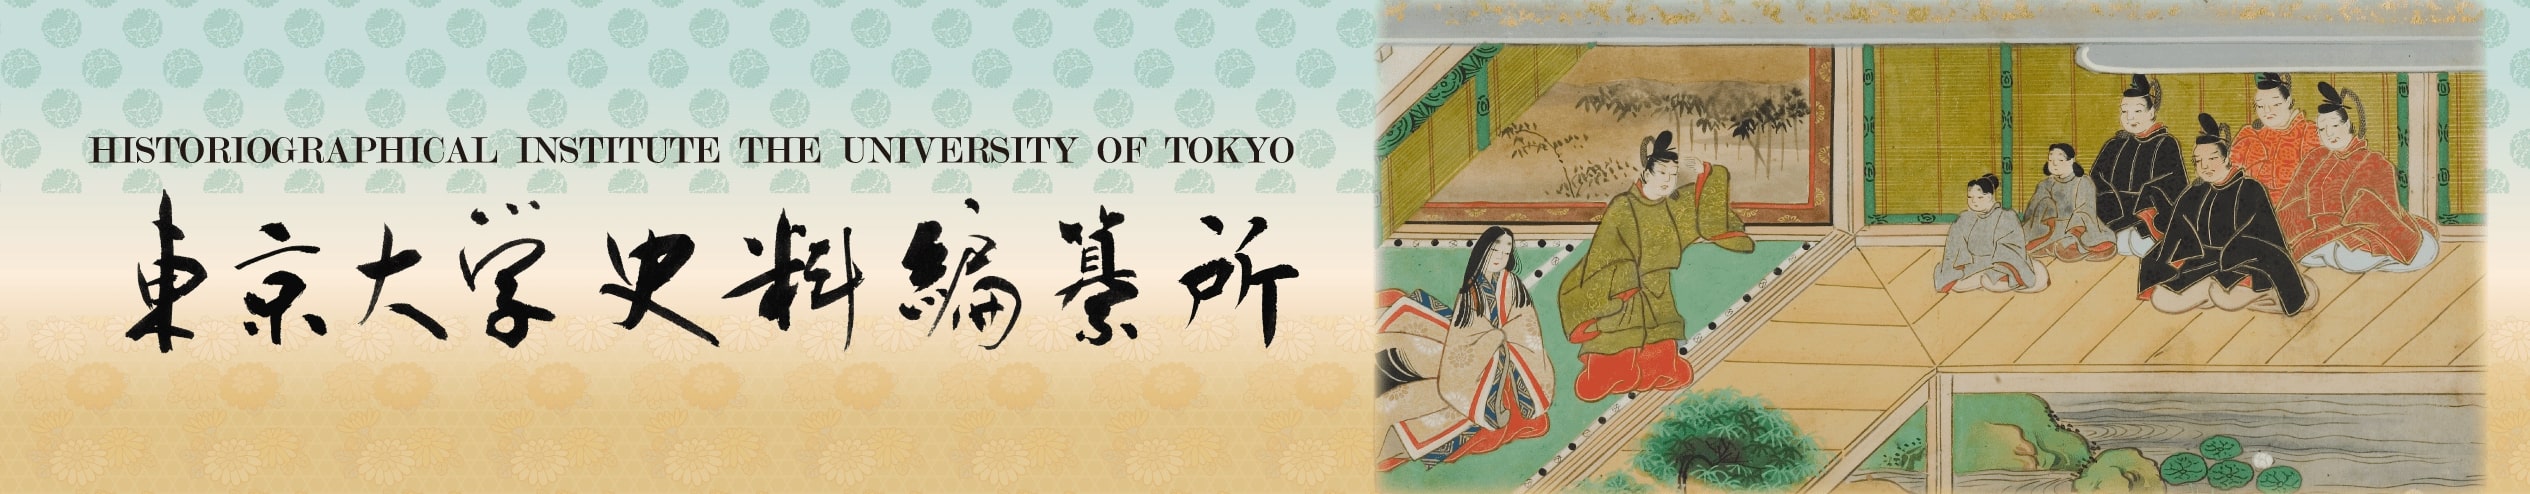 東京大学史料編纂所 Historiographical Institute The University of Tokyo